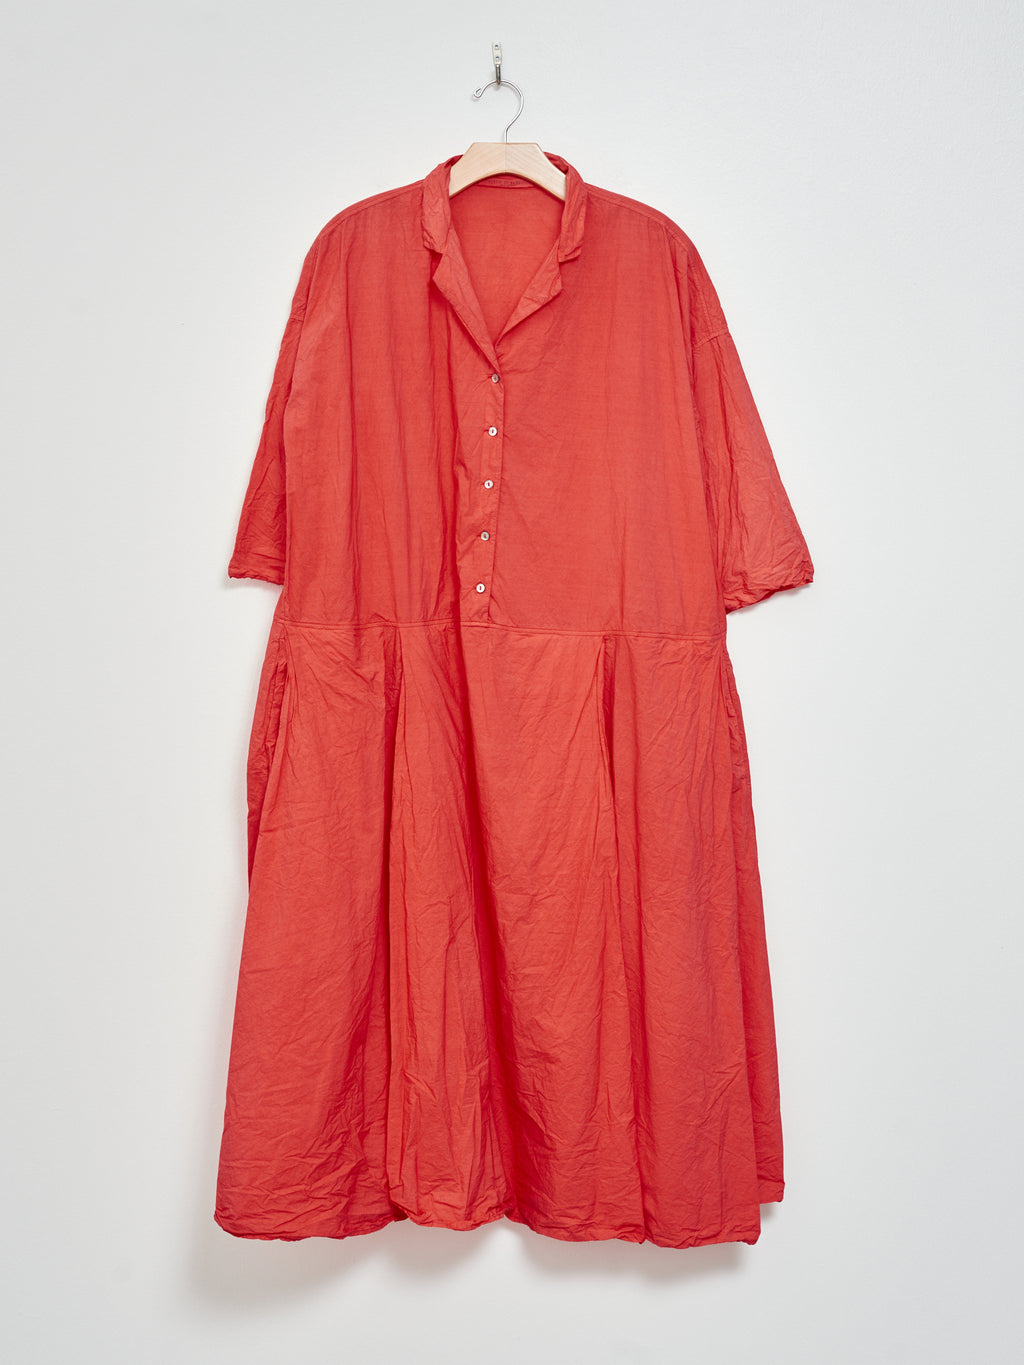 Namu Shop - Album di Famiglia Tailored Collar Dress TC - Poppy Red